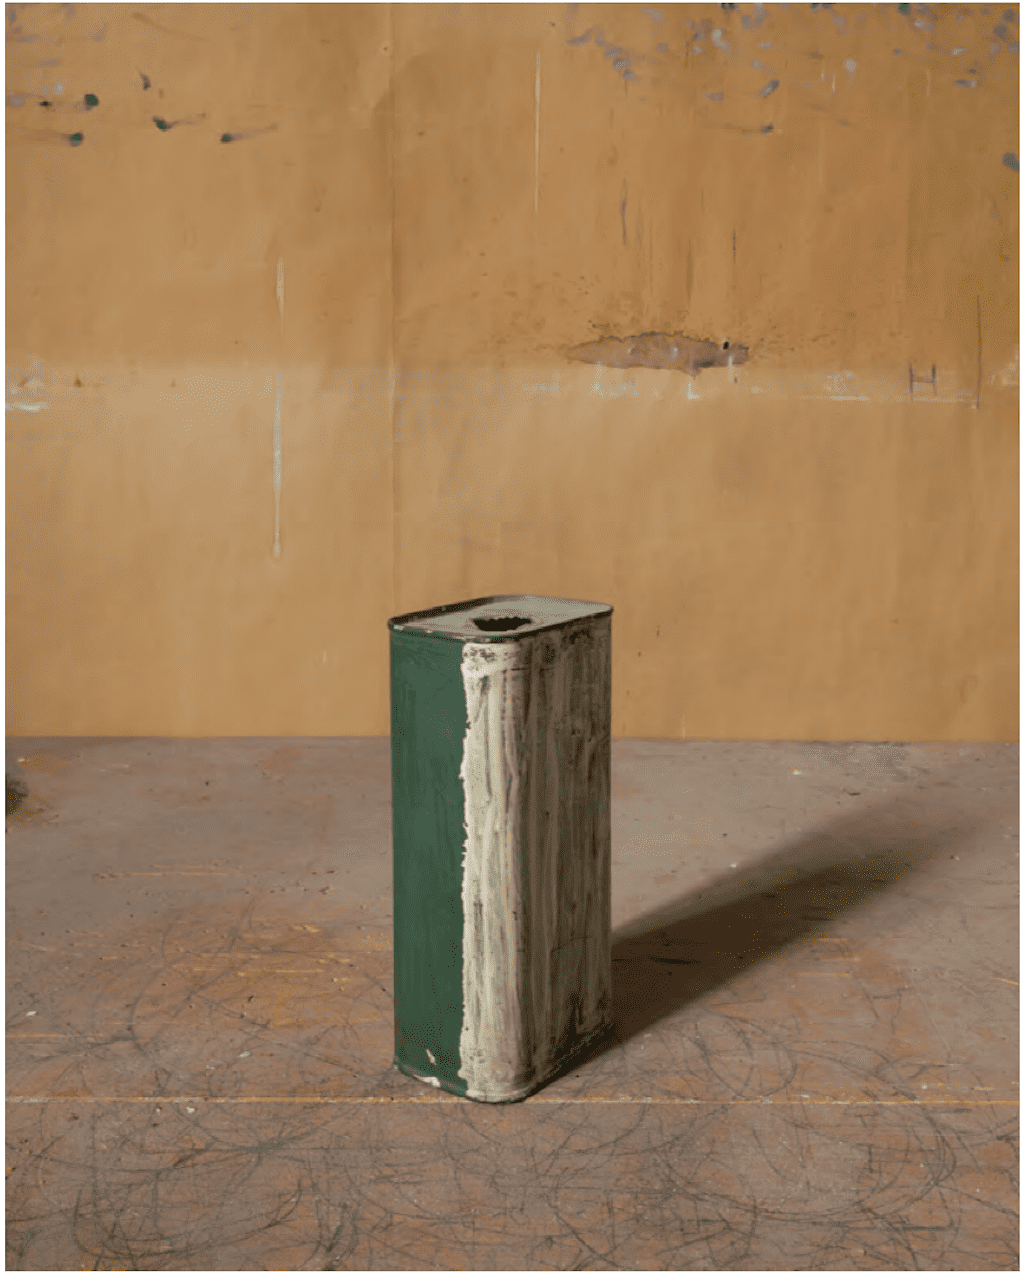 Joel Meyerowitz Morandi’s Objects, Green and White Tin, 2015 Stampa a pigmenti d'archivio 20 x 16 pollici Firmata ed edita sul retro Da un'edizione di 10 esemplari